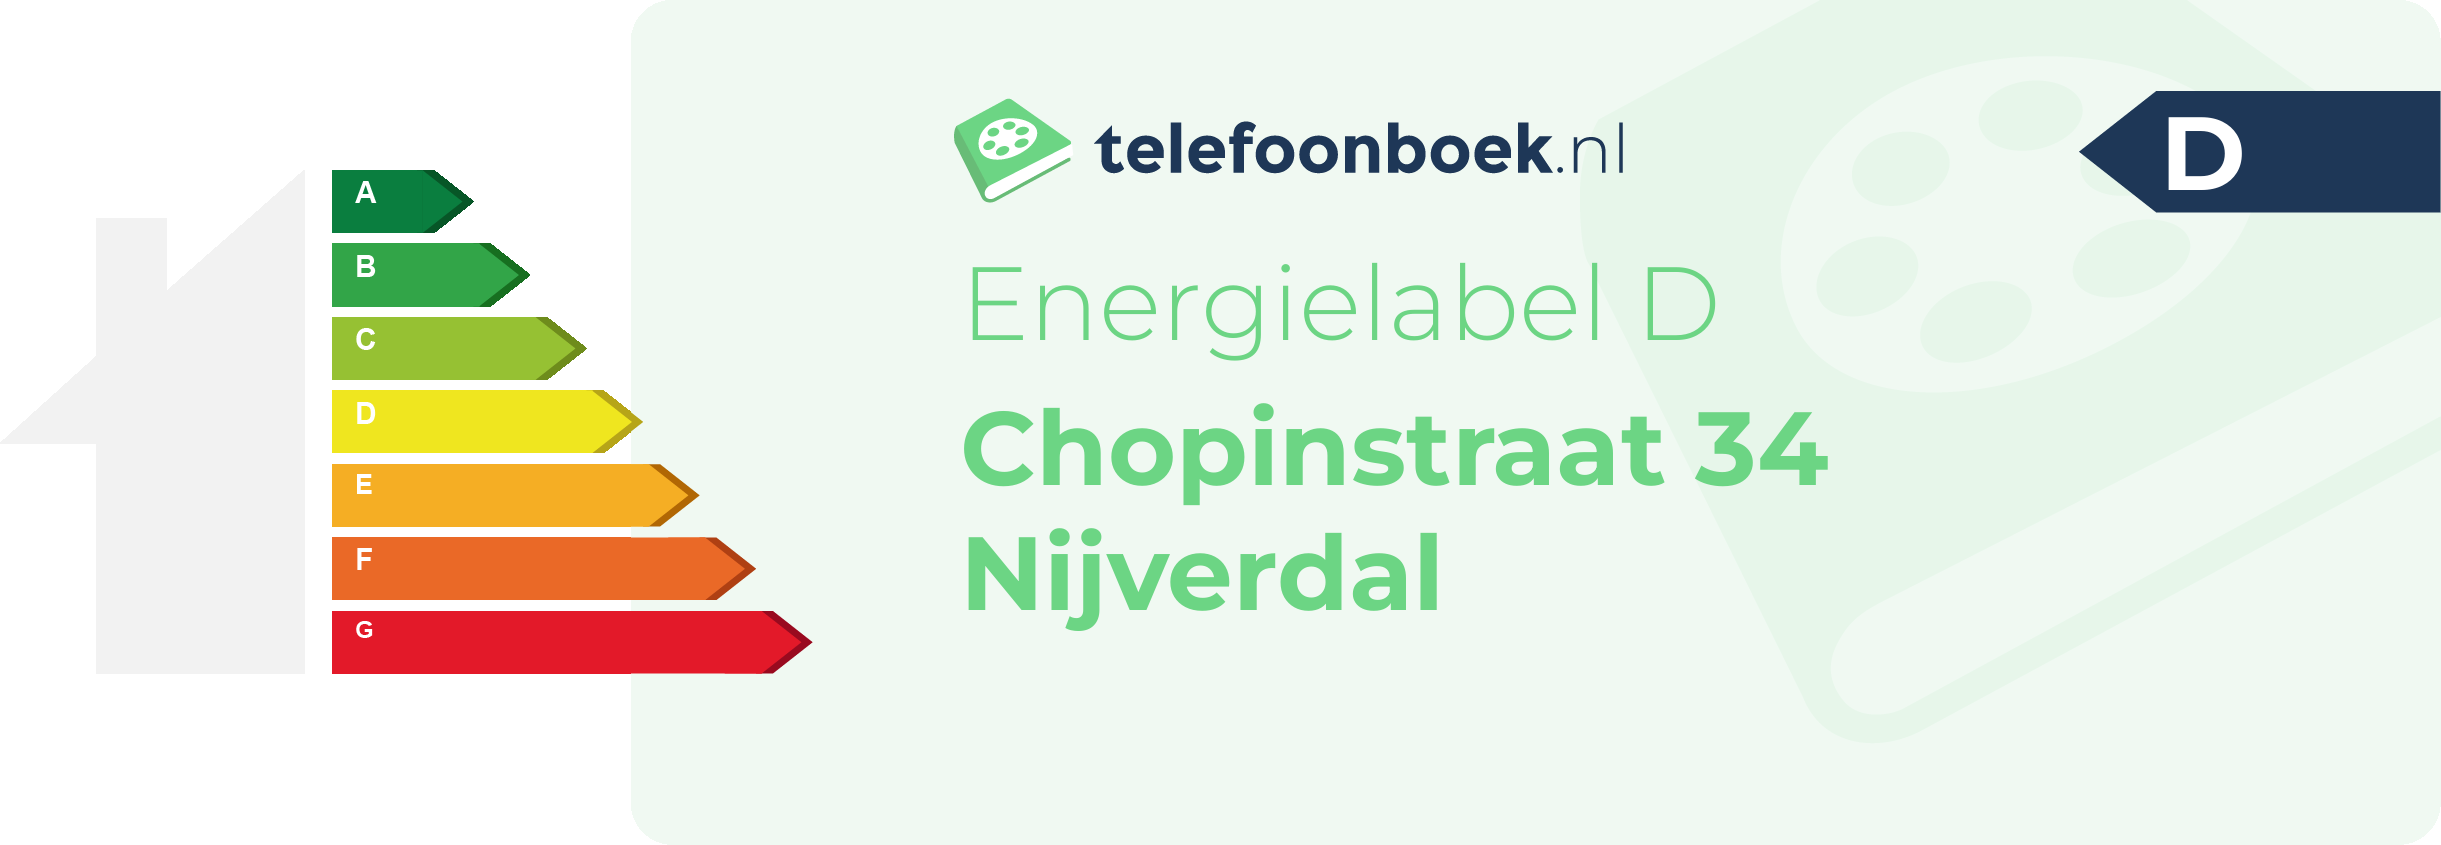 Energielabel Chopinstraat 34 Nijverdal